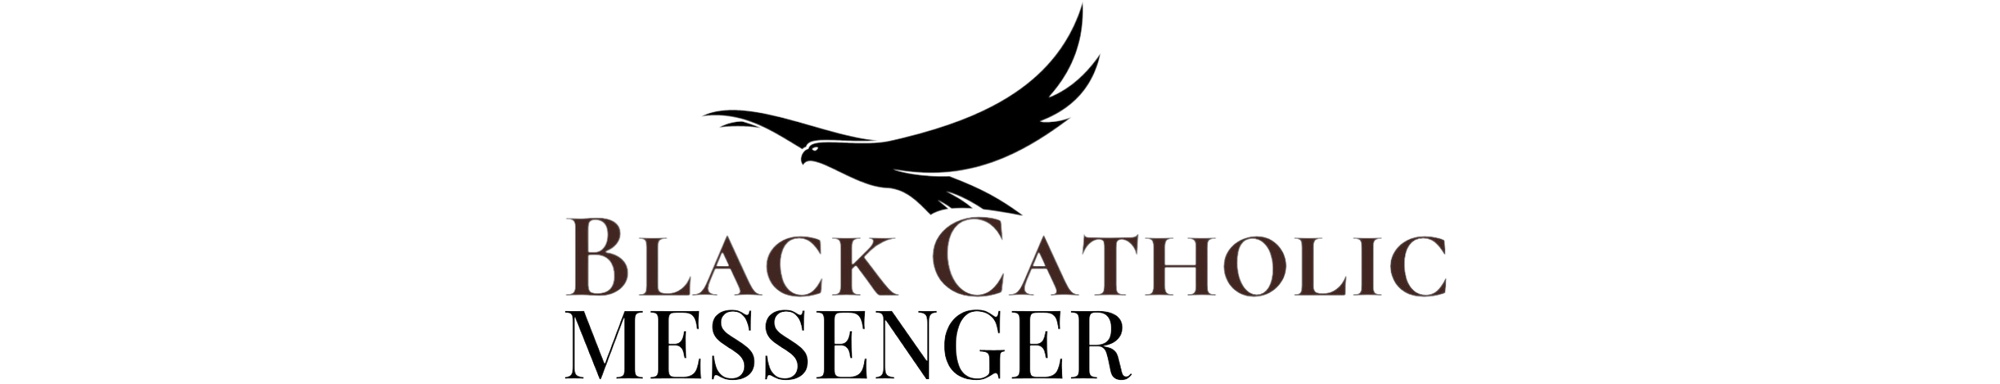 Black Catholic Messenger